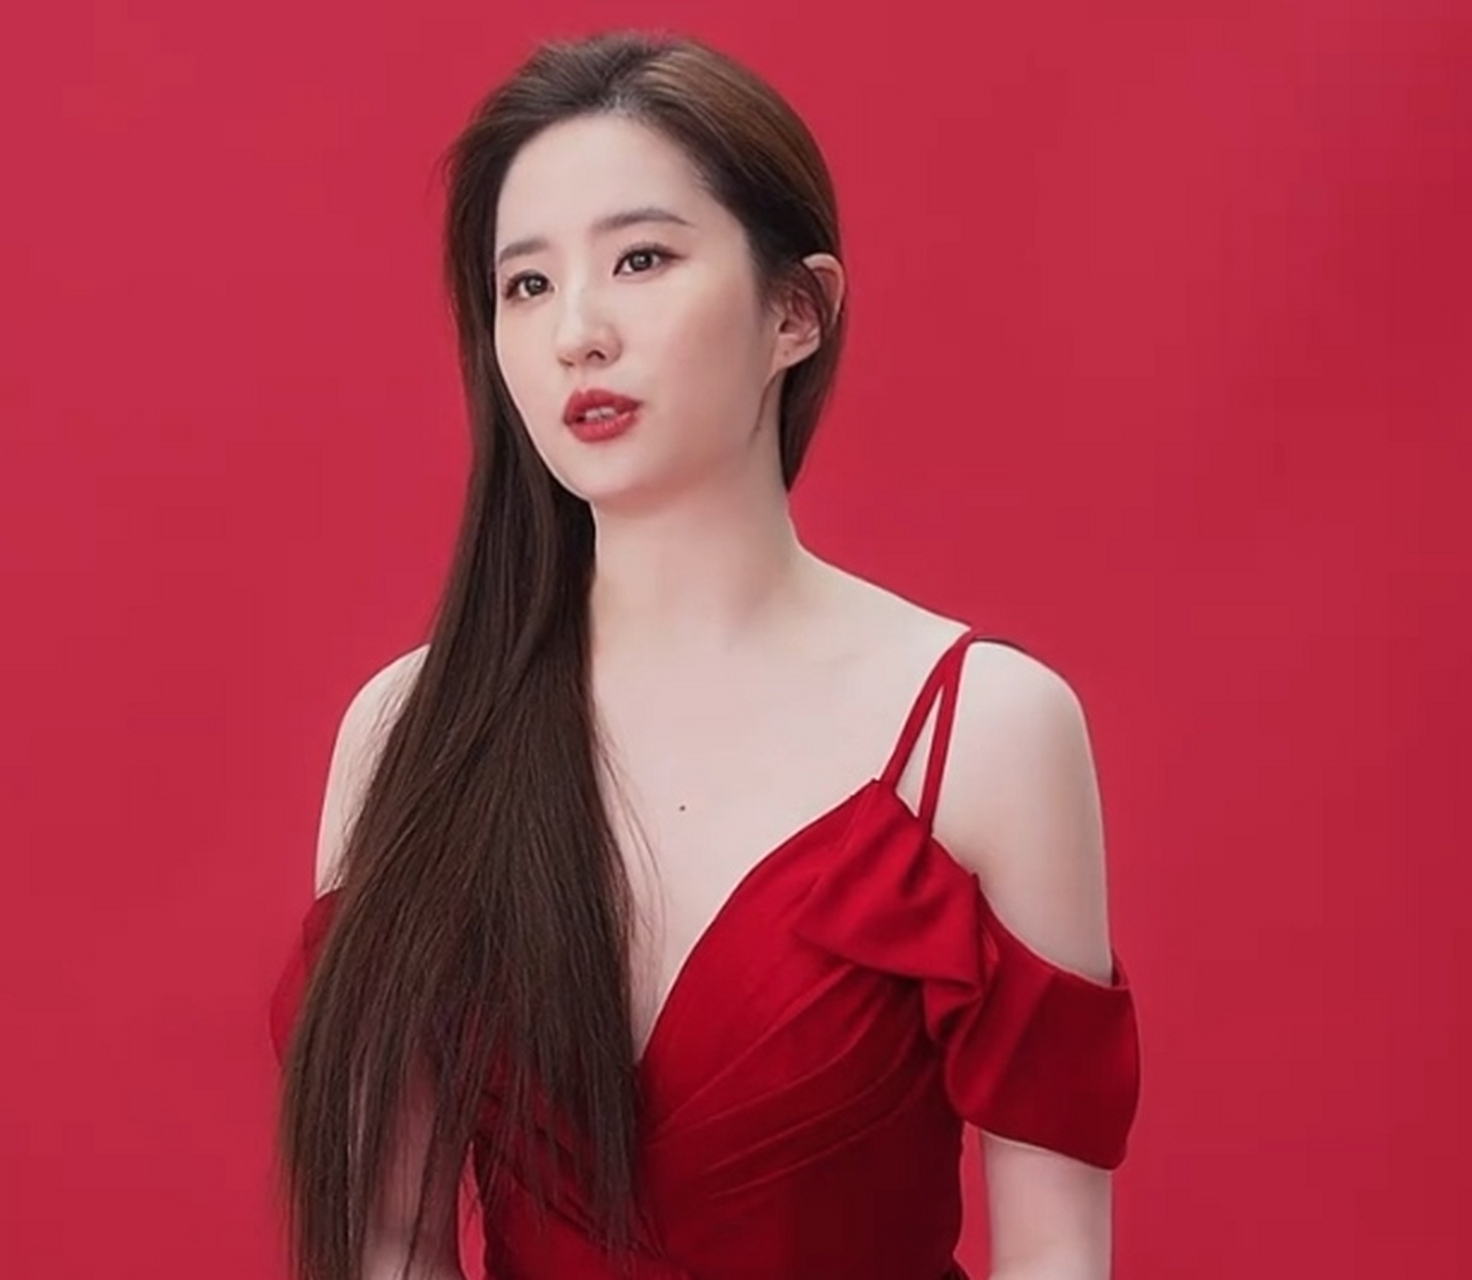 刘亦菲一袭红裙录制品牌短片,脸型稍微圆润了一些,但美貌依旧很稳定